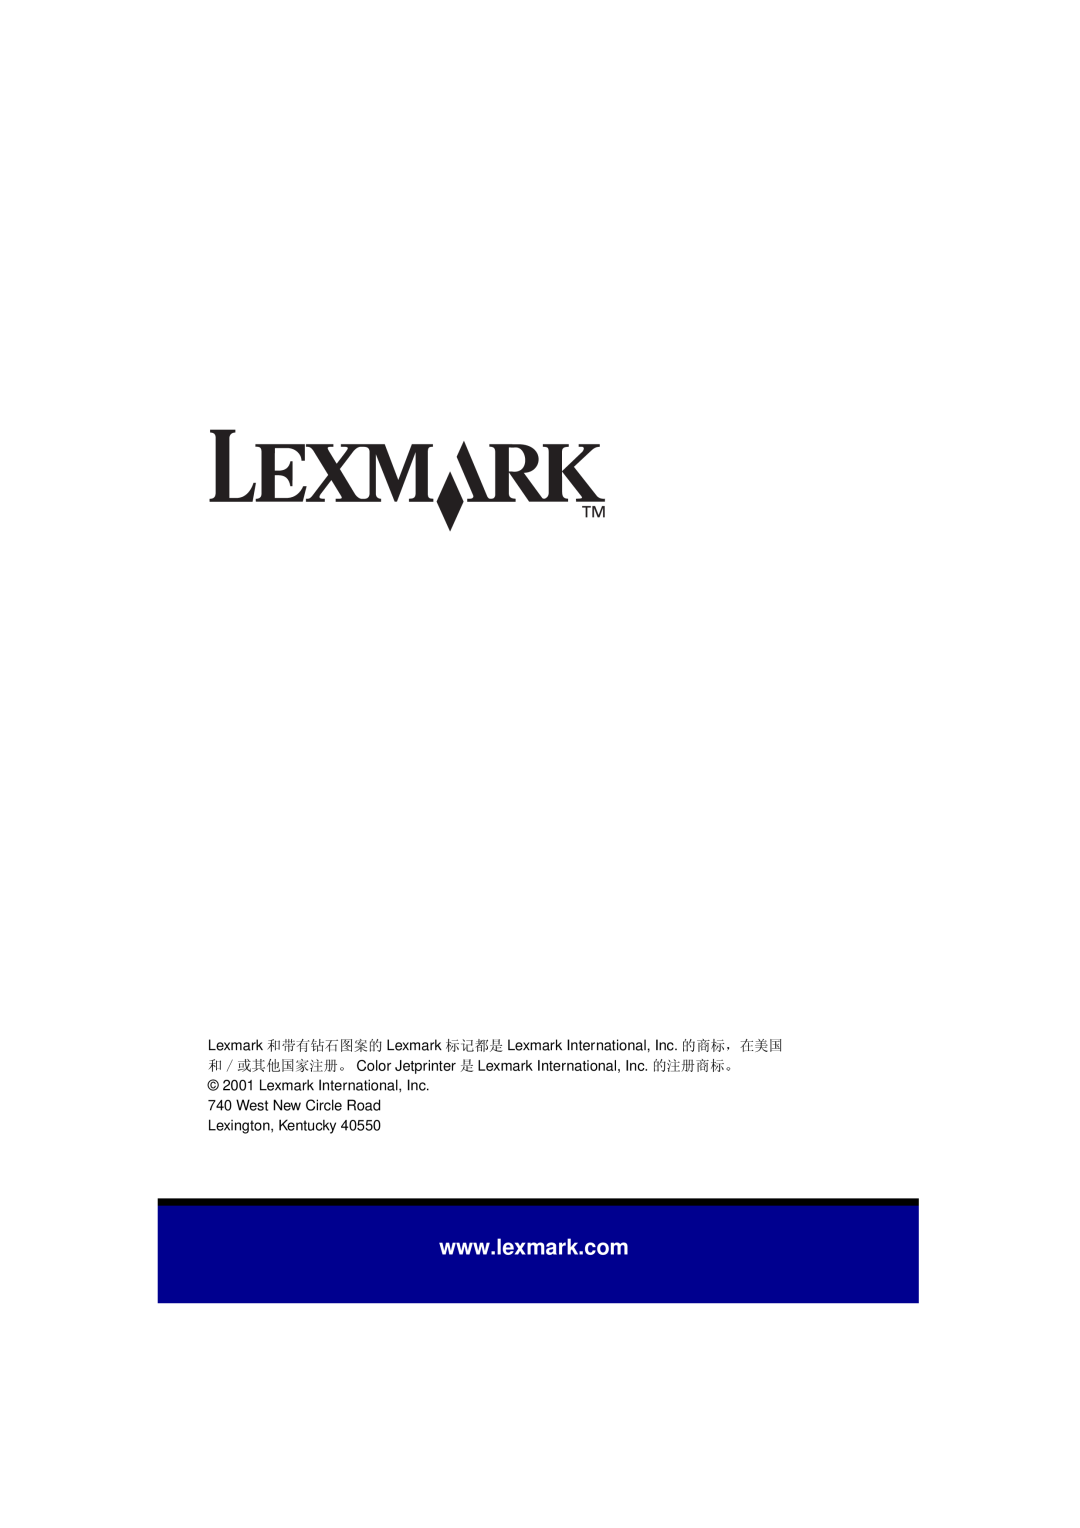 Univex Z55 manual Lexmark International, Inc 740 West New Circle Road, Lexington, Kentucky 